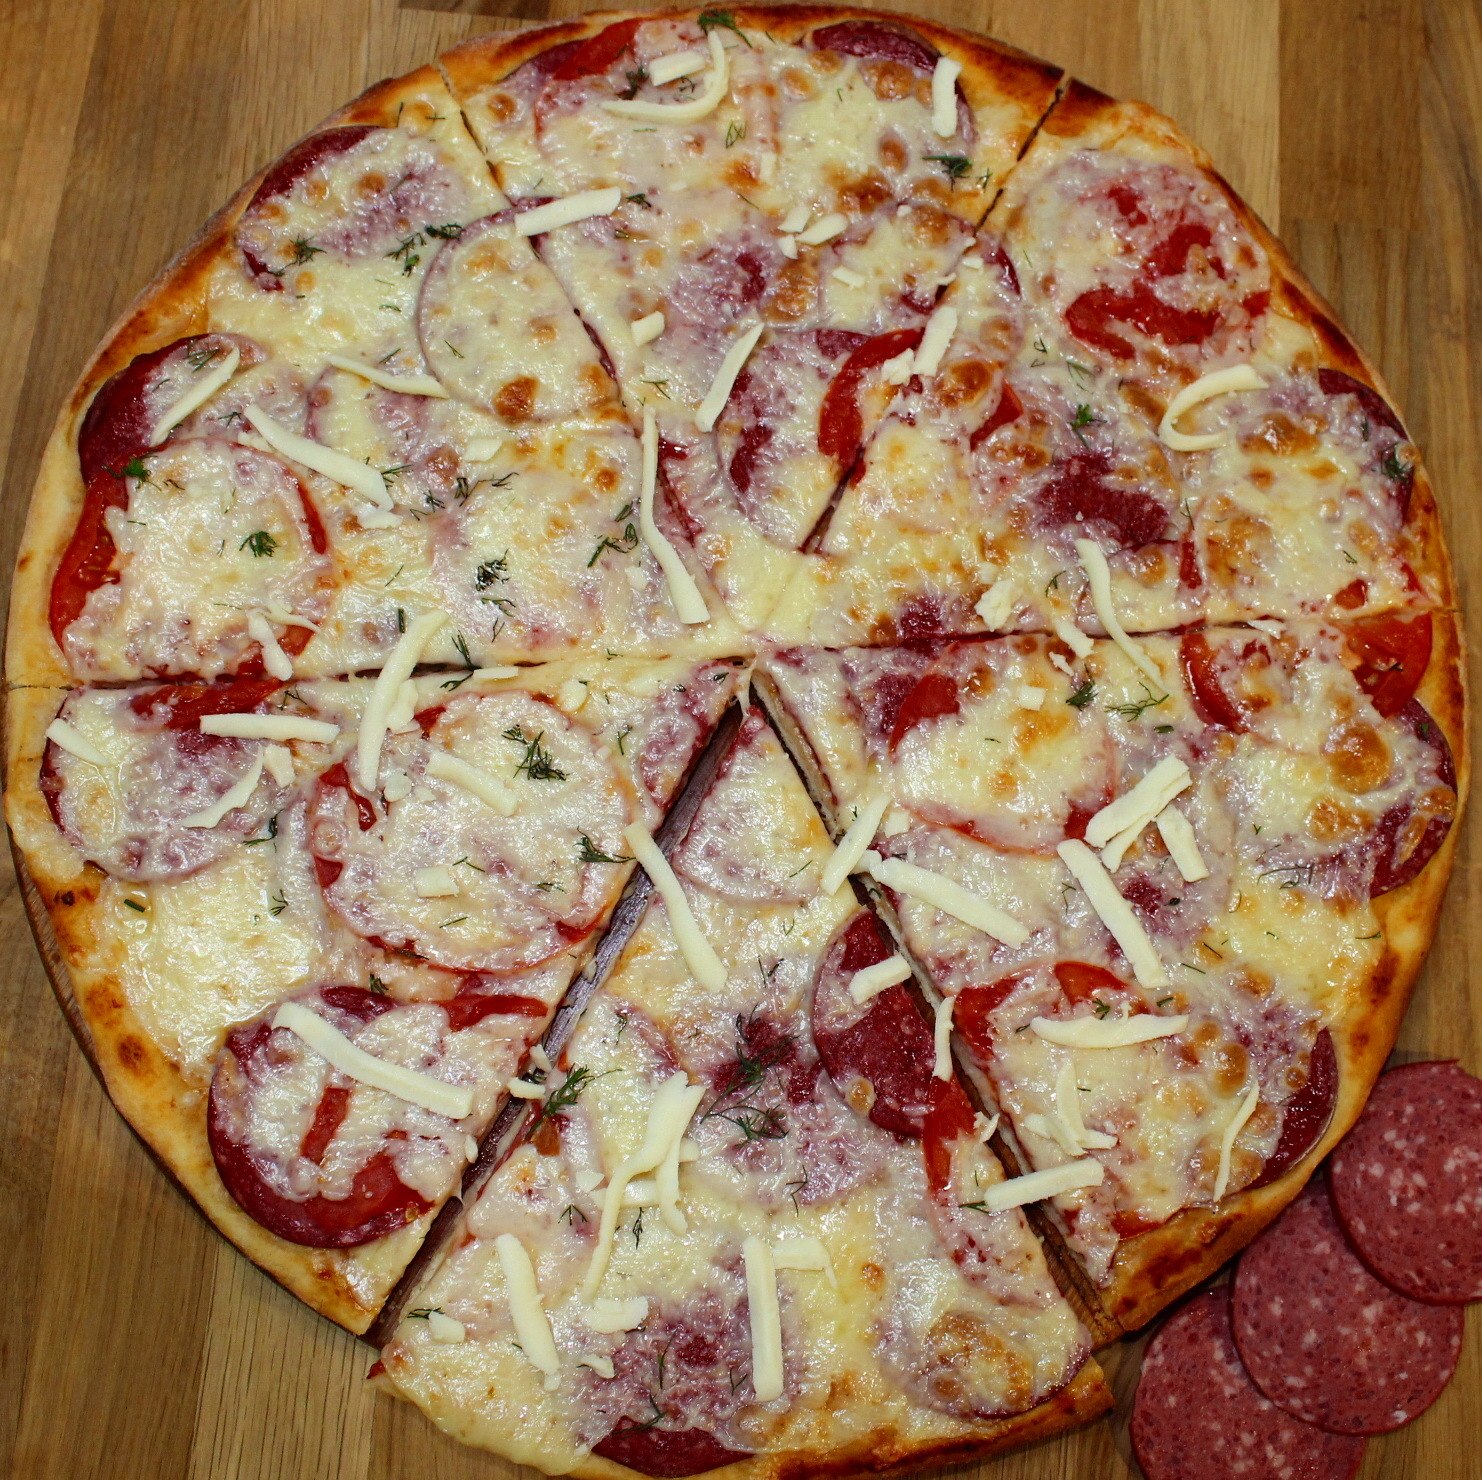 Пицца с колбасой